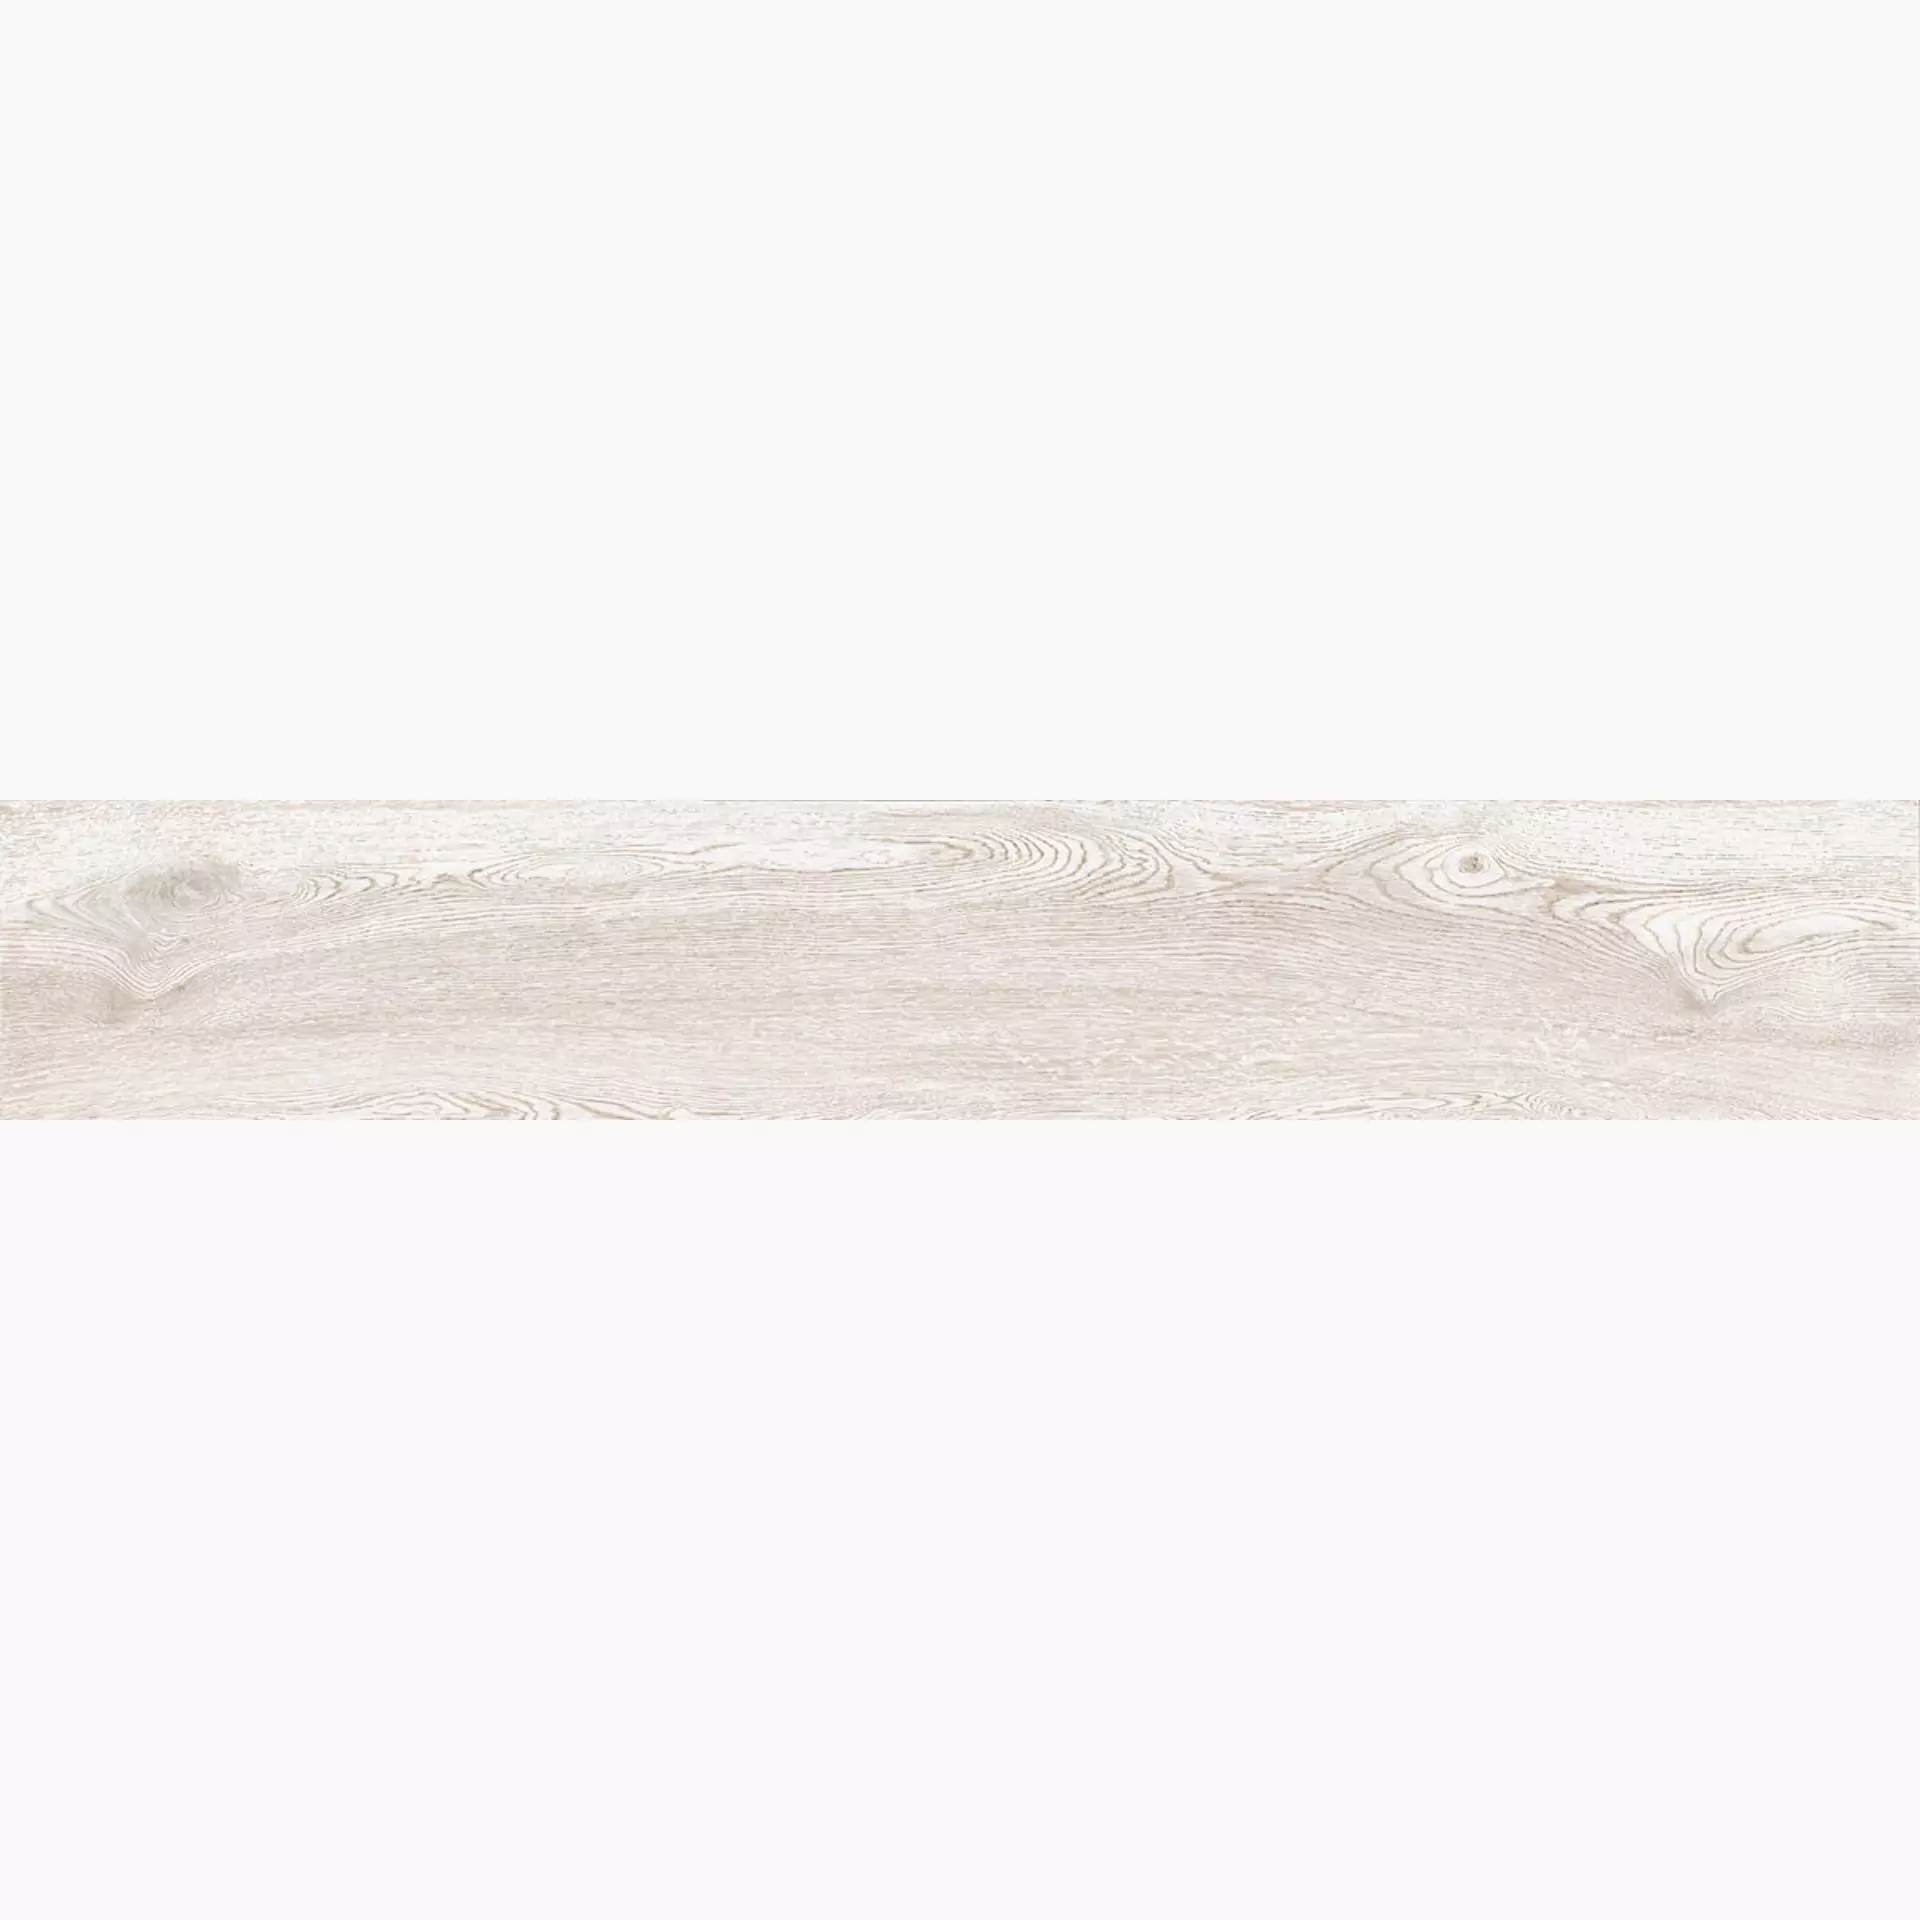 La Faenza Legno White Natural Slate Cut Matt 168442 30x180cm rectified 10mm - LEGNO 3018W RM